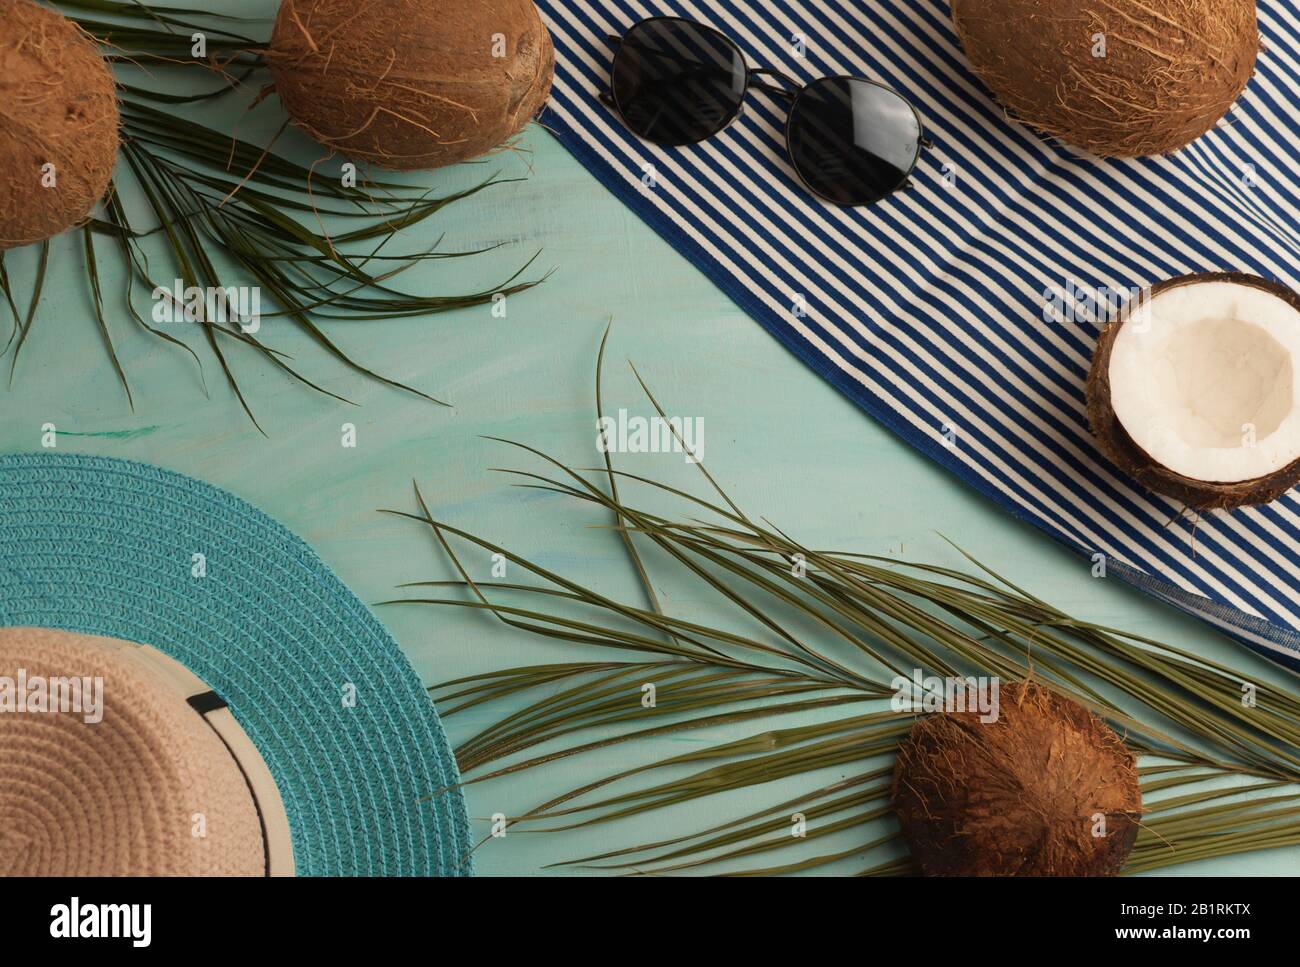 Composizione o layout estivo. Foglie di palma tropicale, cappello, bicchieri, telo mare, cocco su uno sfondo di verde mare. Il concetto della stagione estiva Foto Stock